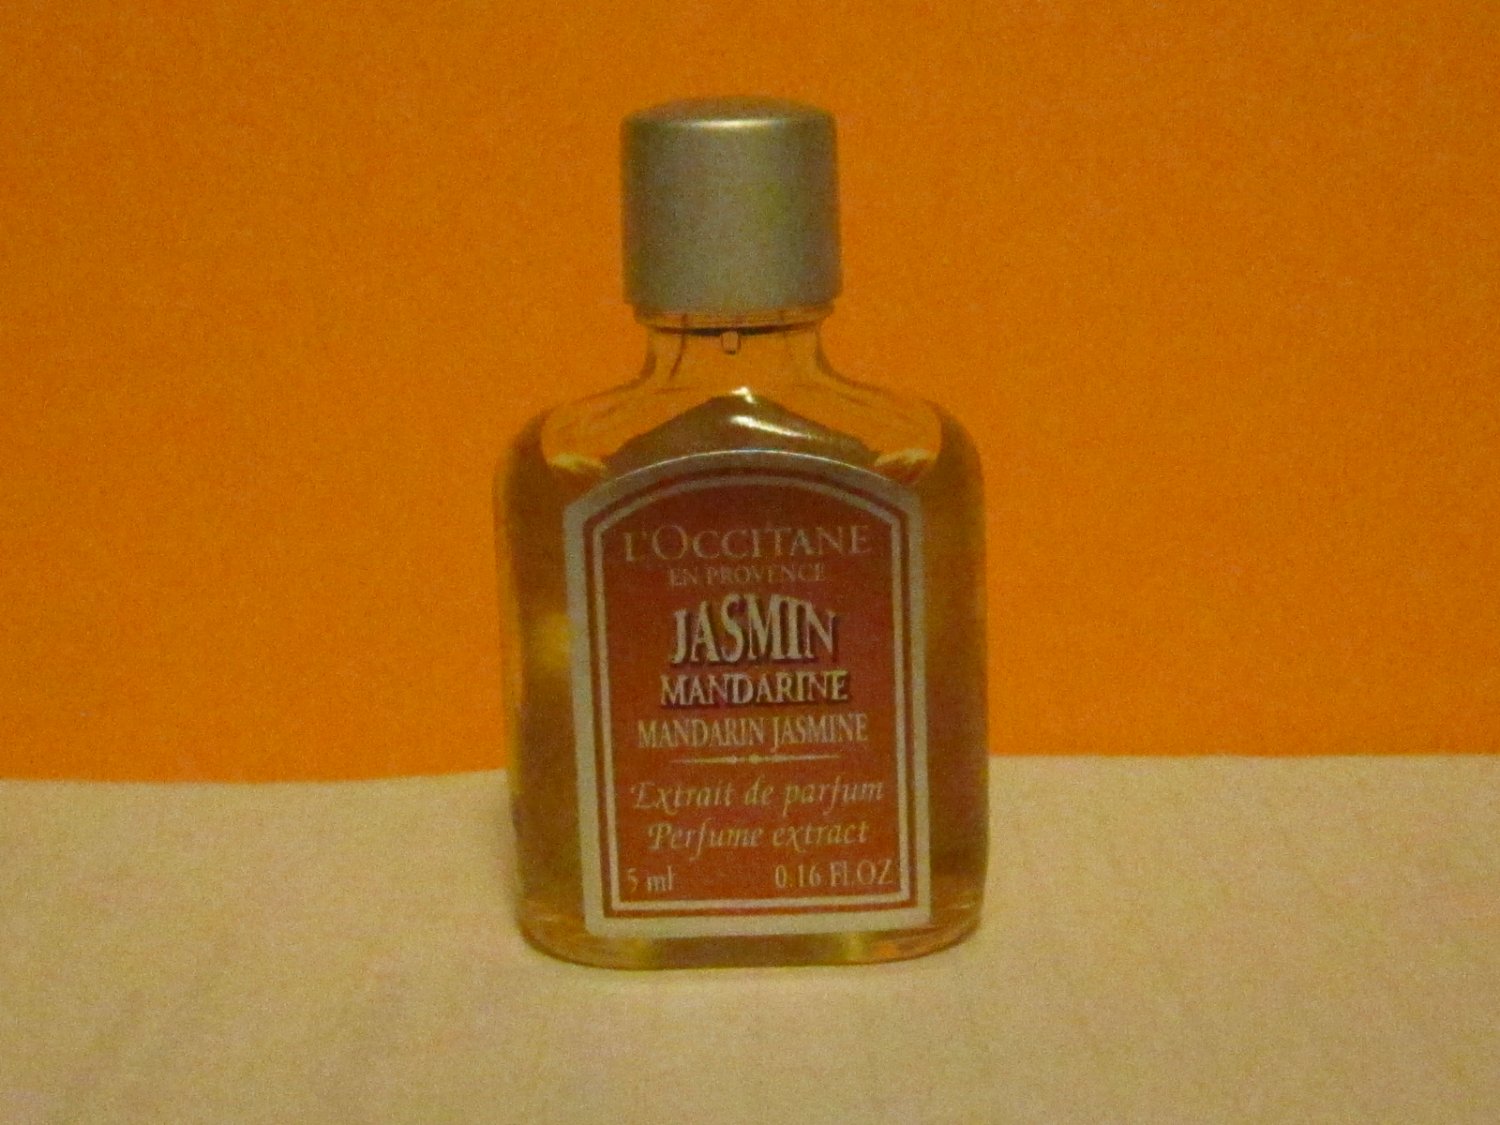 Loccitane Extrait de Parfum perfume extract Jasmin Mandarine 5ml L'occitane